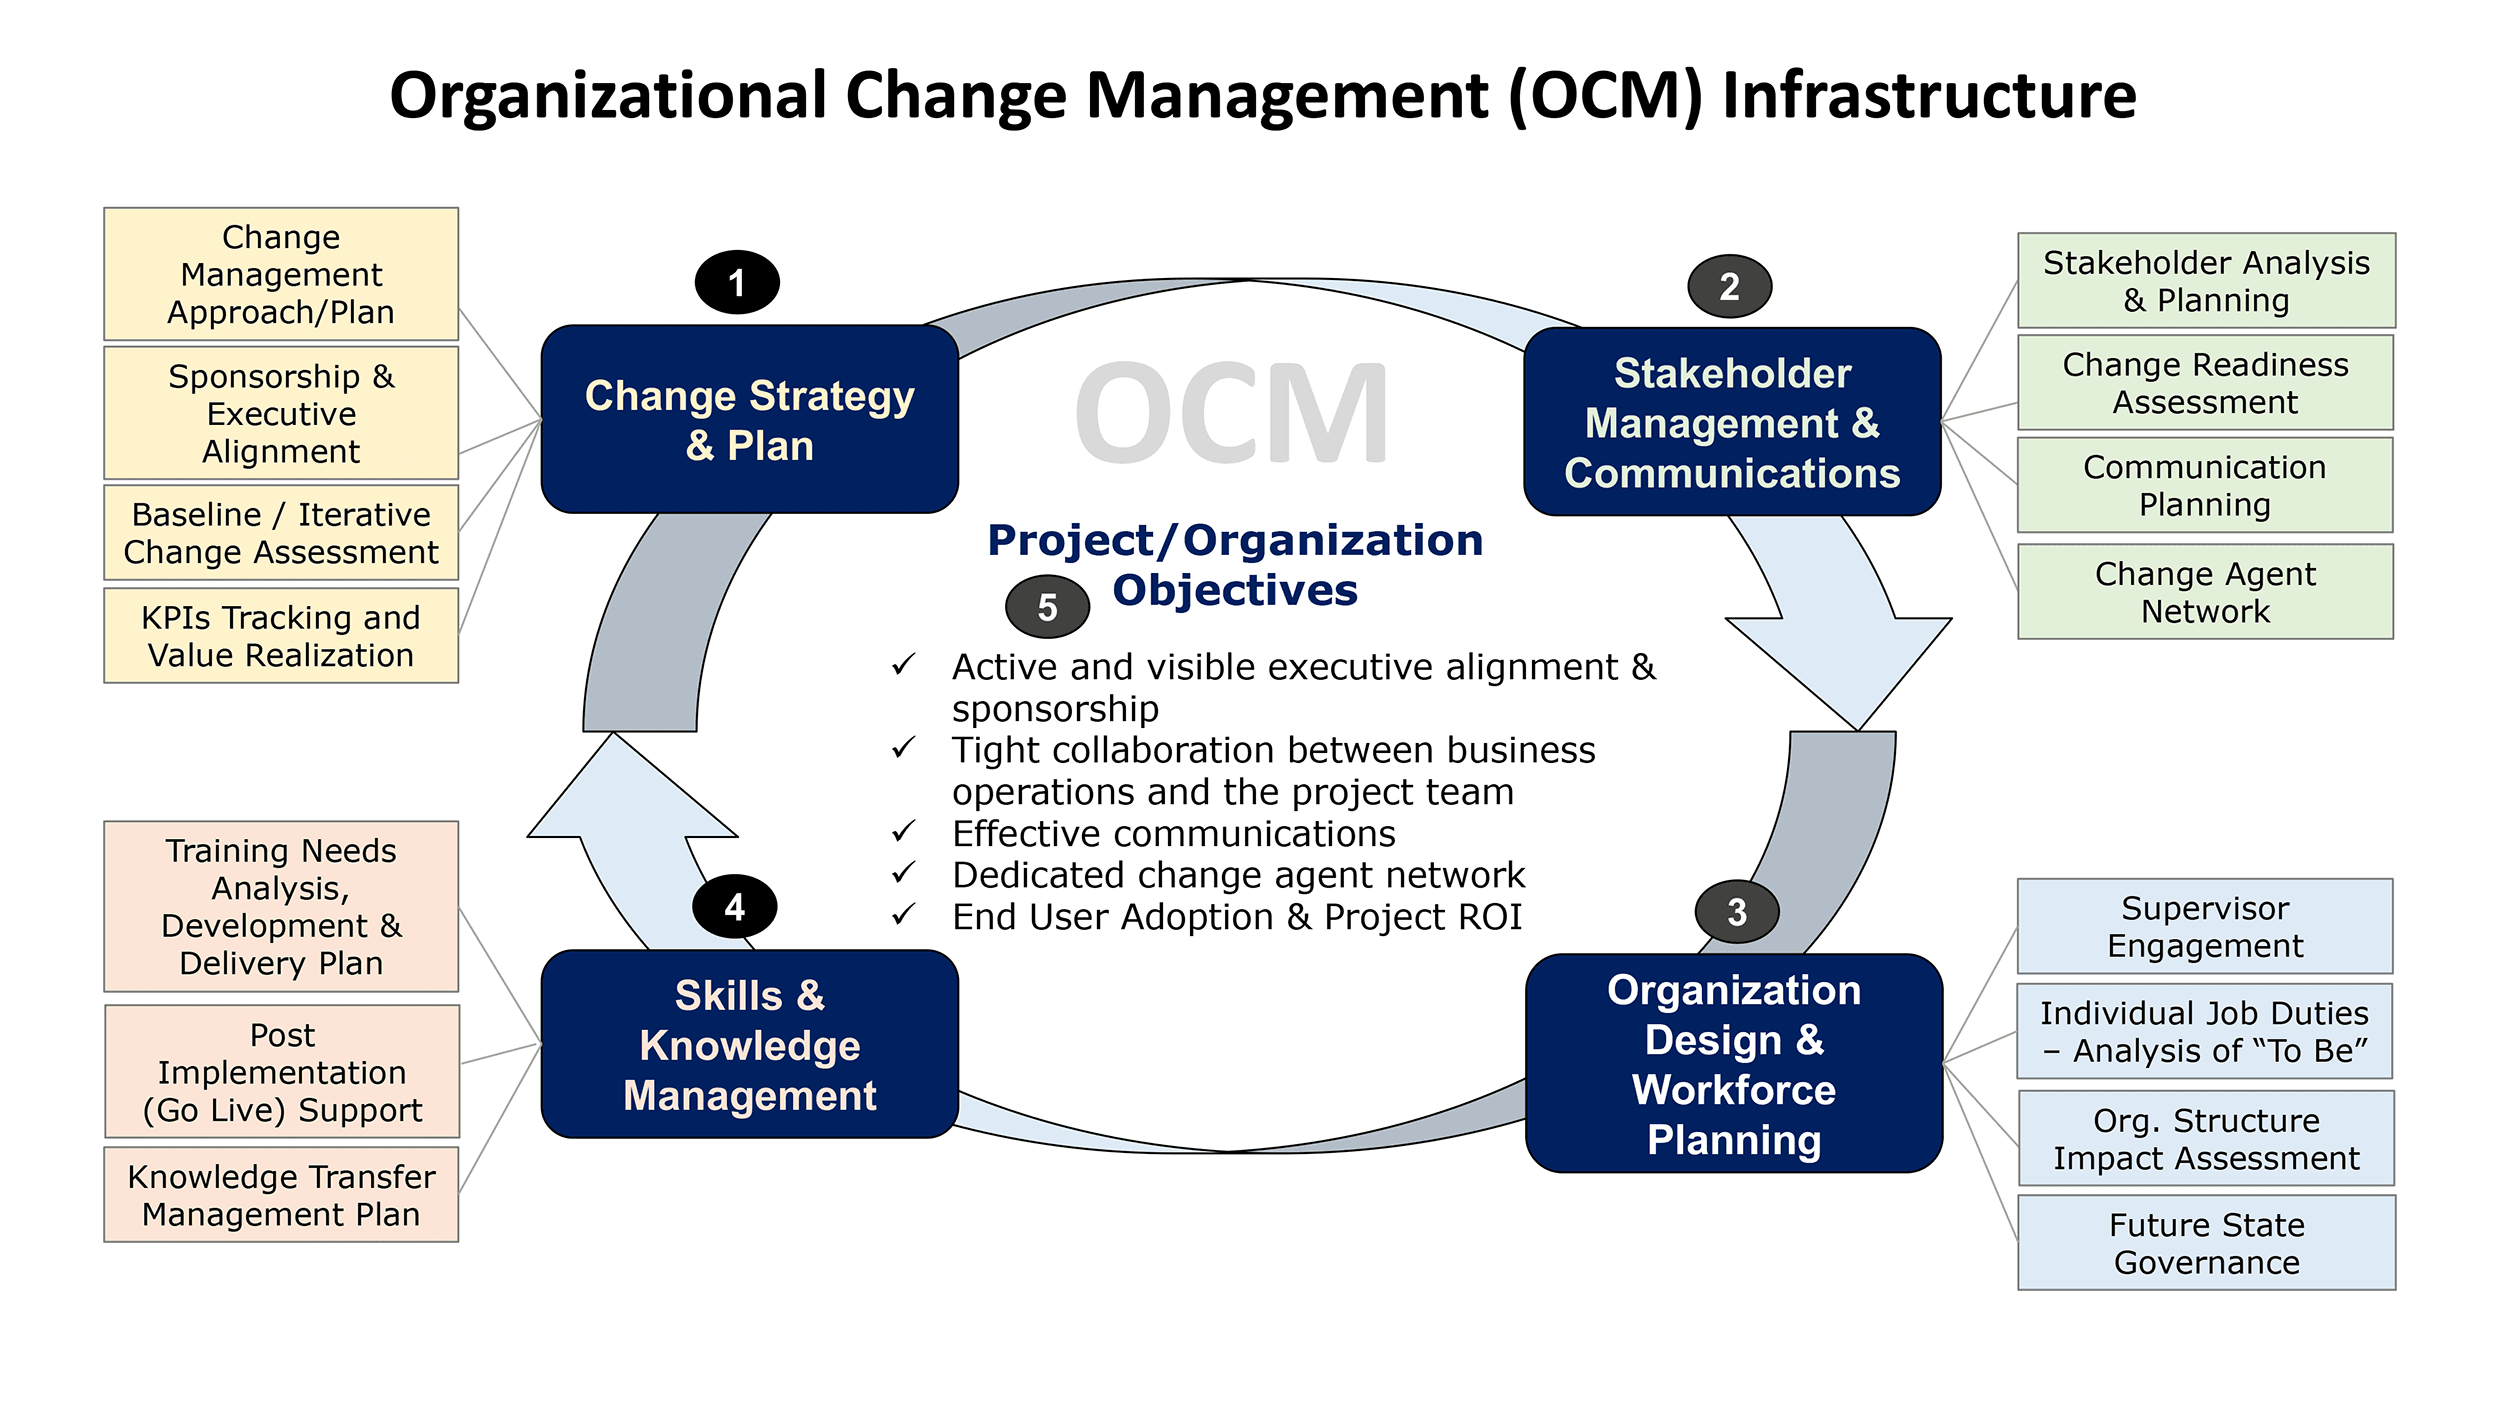 An infrastructure for OCM.